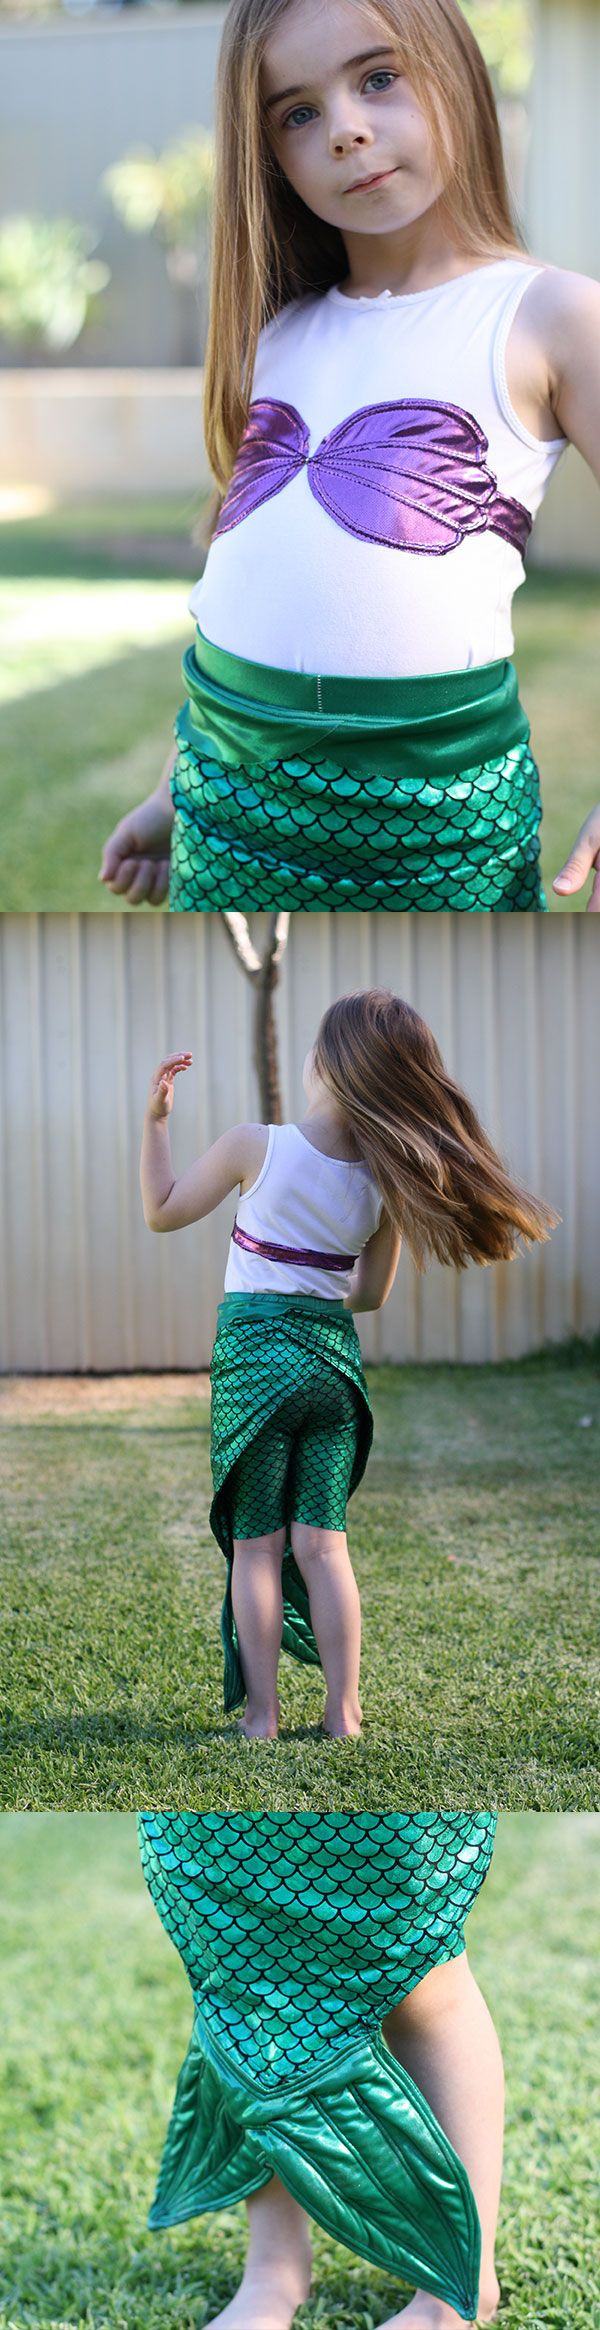 DIY Toddler Mermaid Costume
 the little mermaid costume